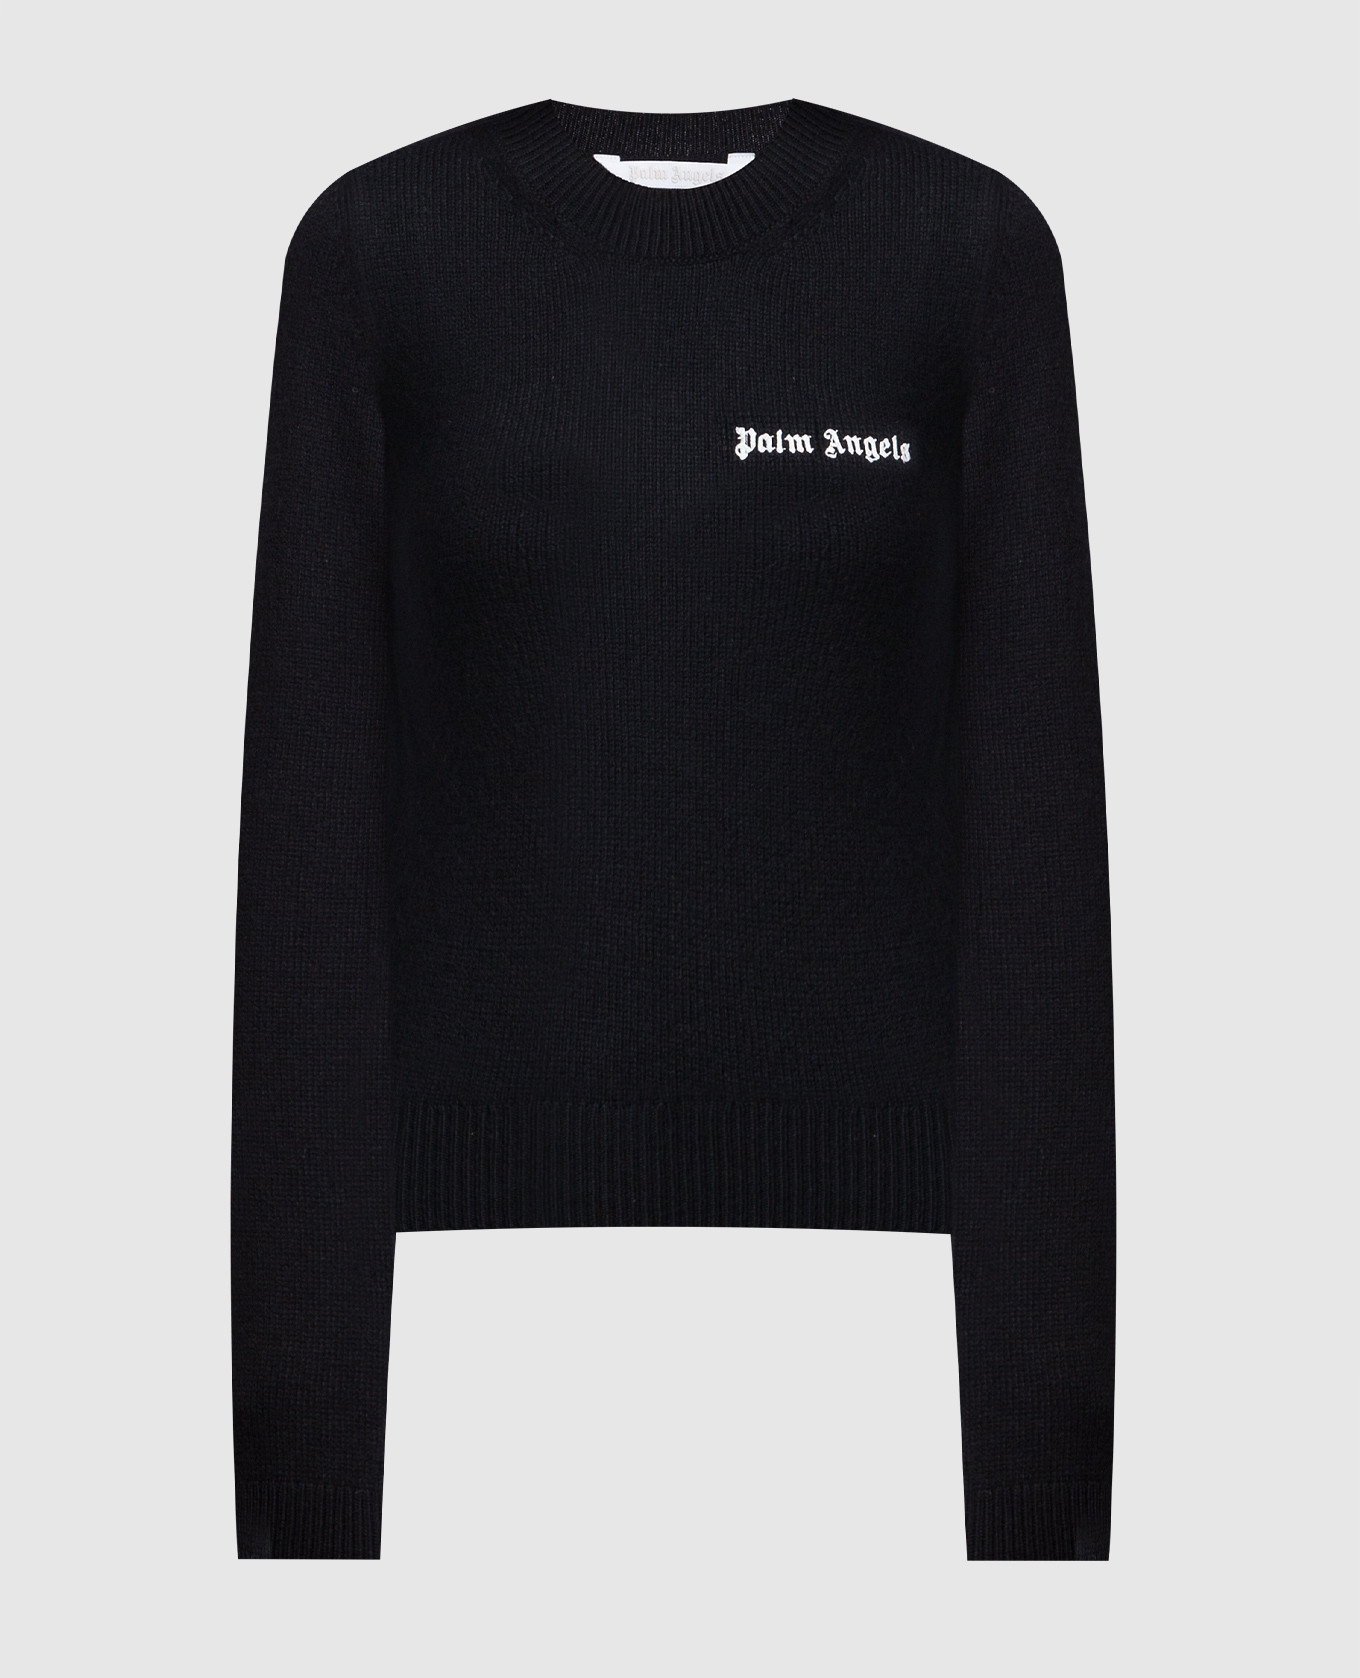 Черный свитер с вышивкой логотипа